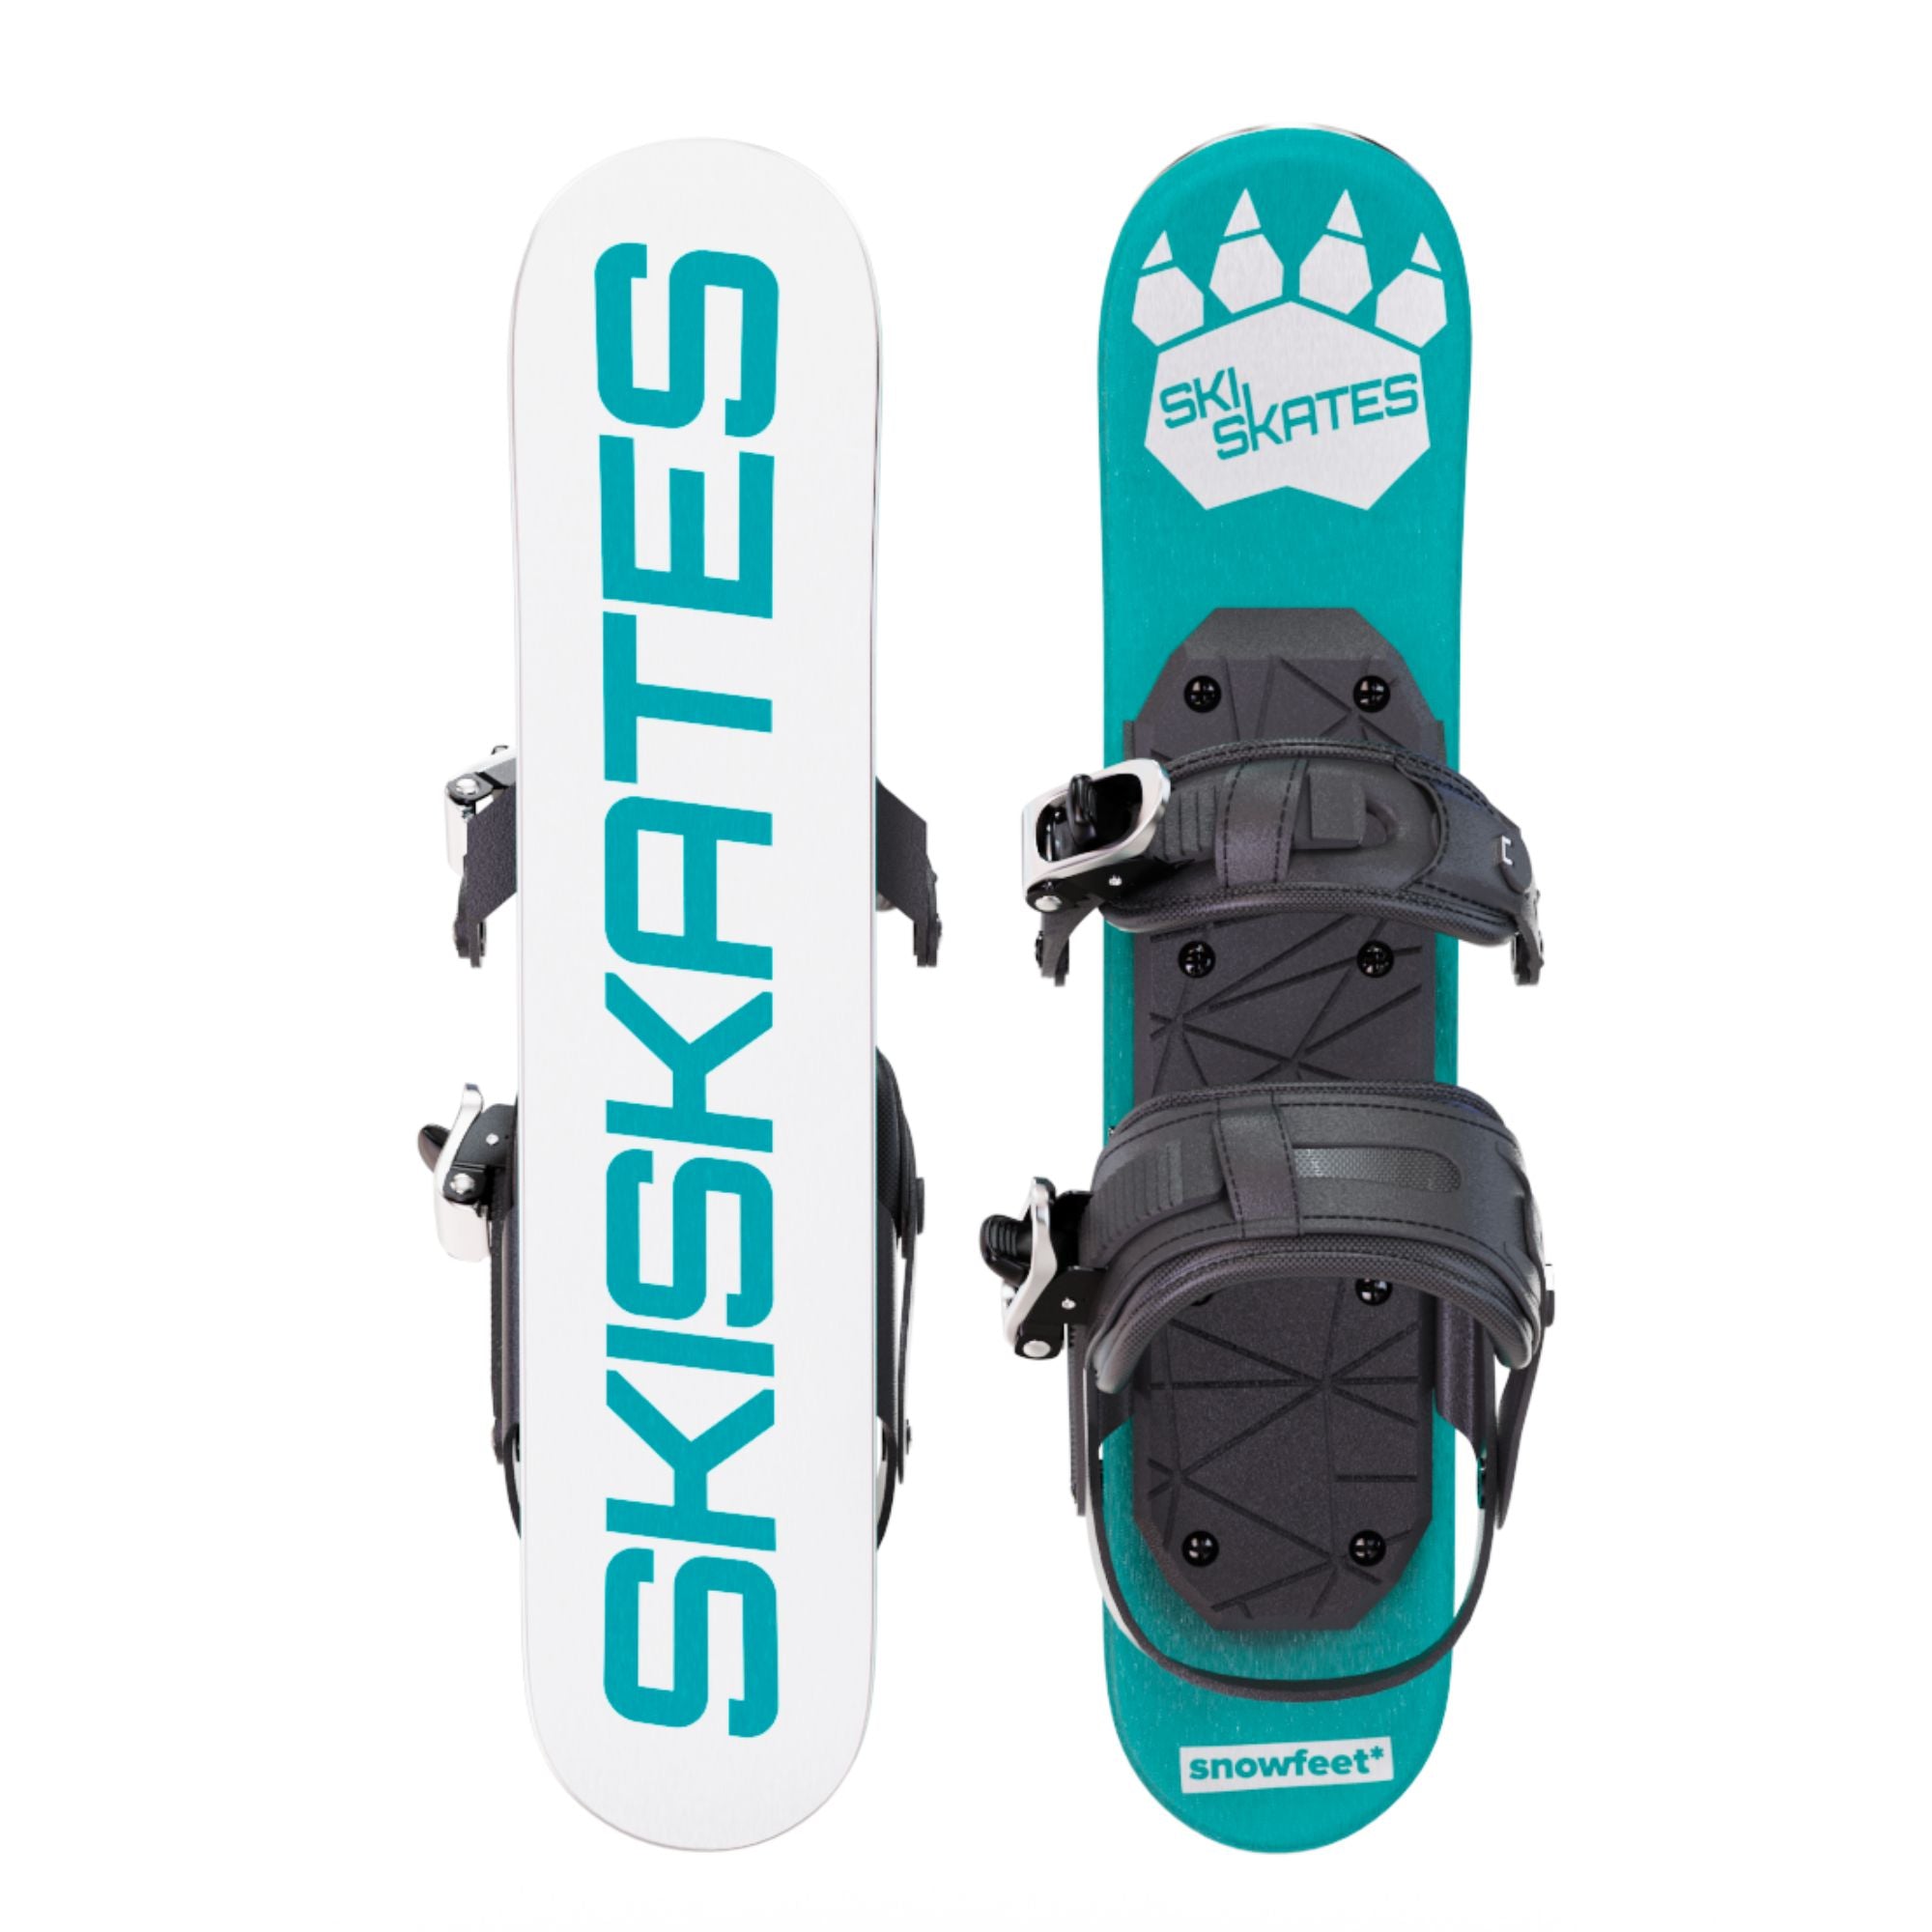 スキースケート [Skiskates]｜雪用スケート｜スノーボードブーツモデル